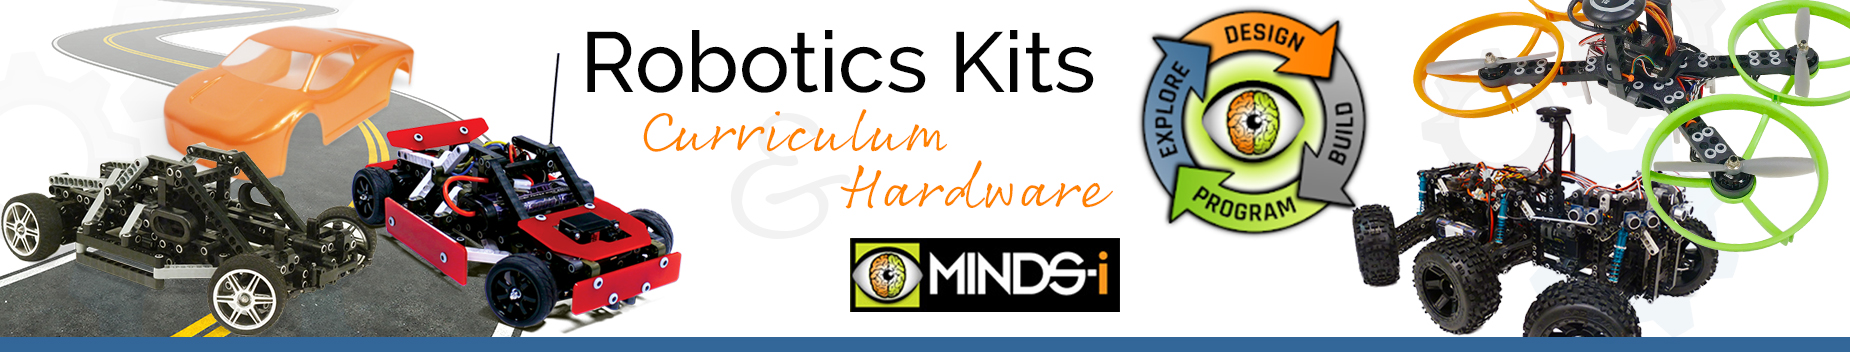 STEM Camp Robotics Kits